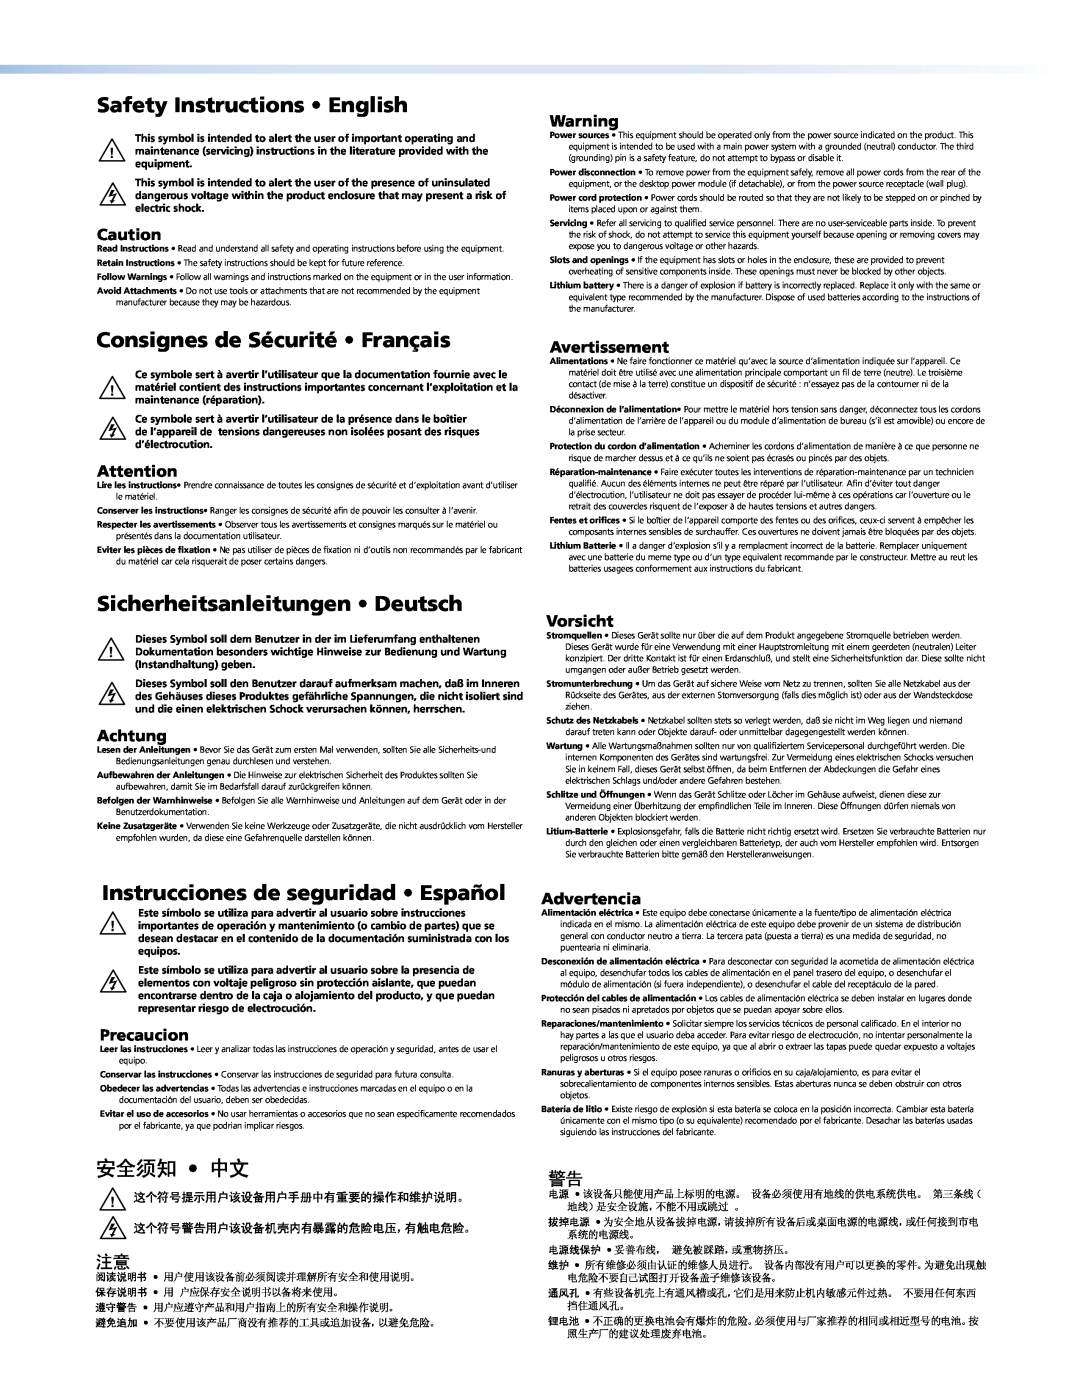 Extron electronic MSW 4V rs Safety Instructions English, Consignes de Sécurité Français, Sicherheitsanleitungen Deutsch 